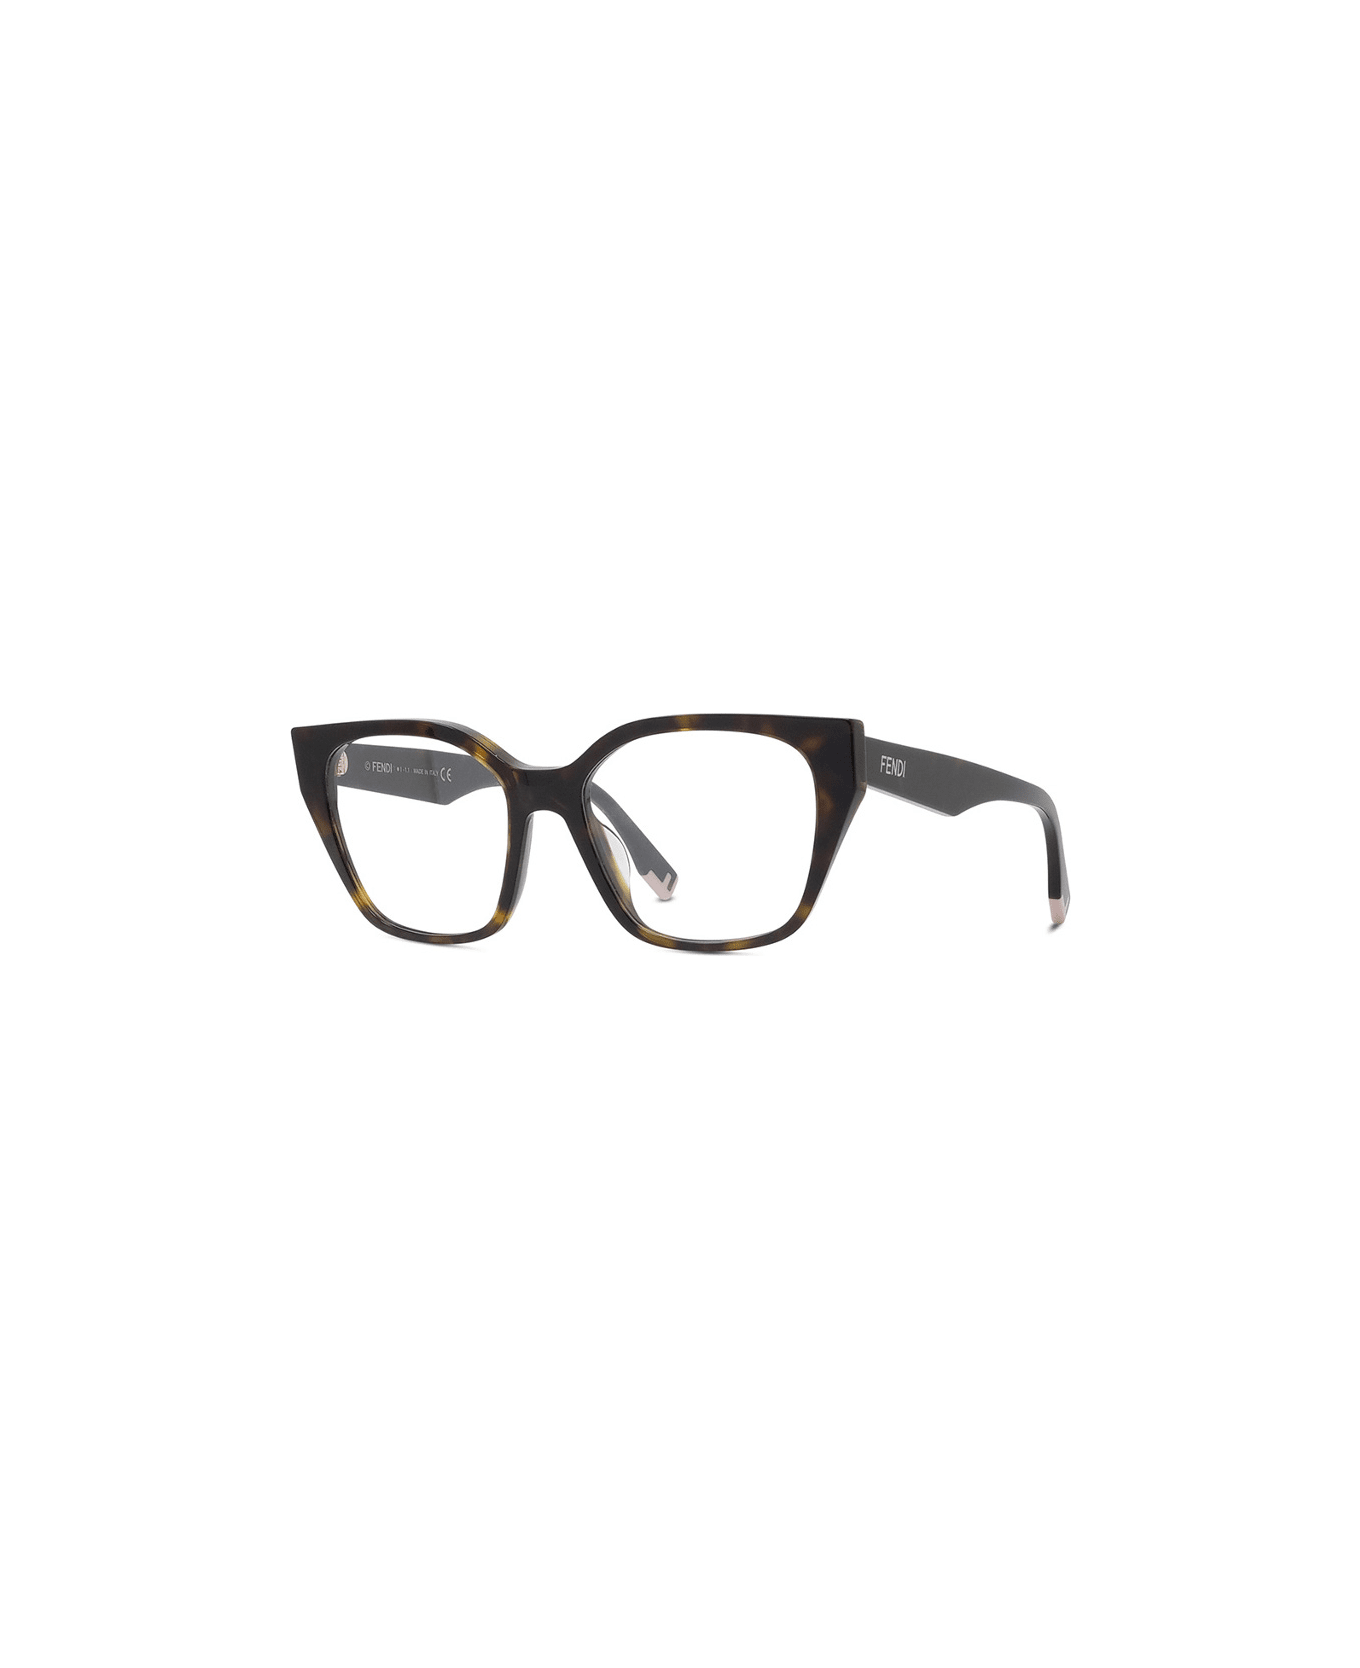 Fendi Eyewear FE50001i 052 Glasses - Tartarugato